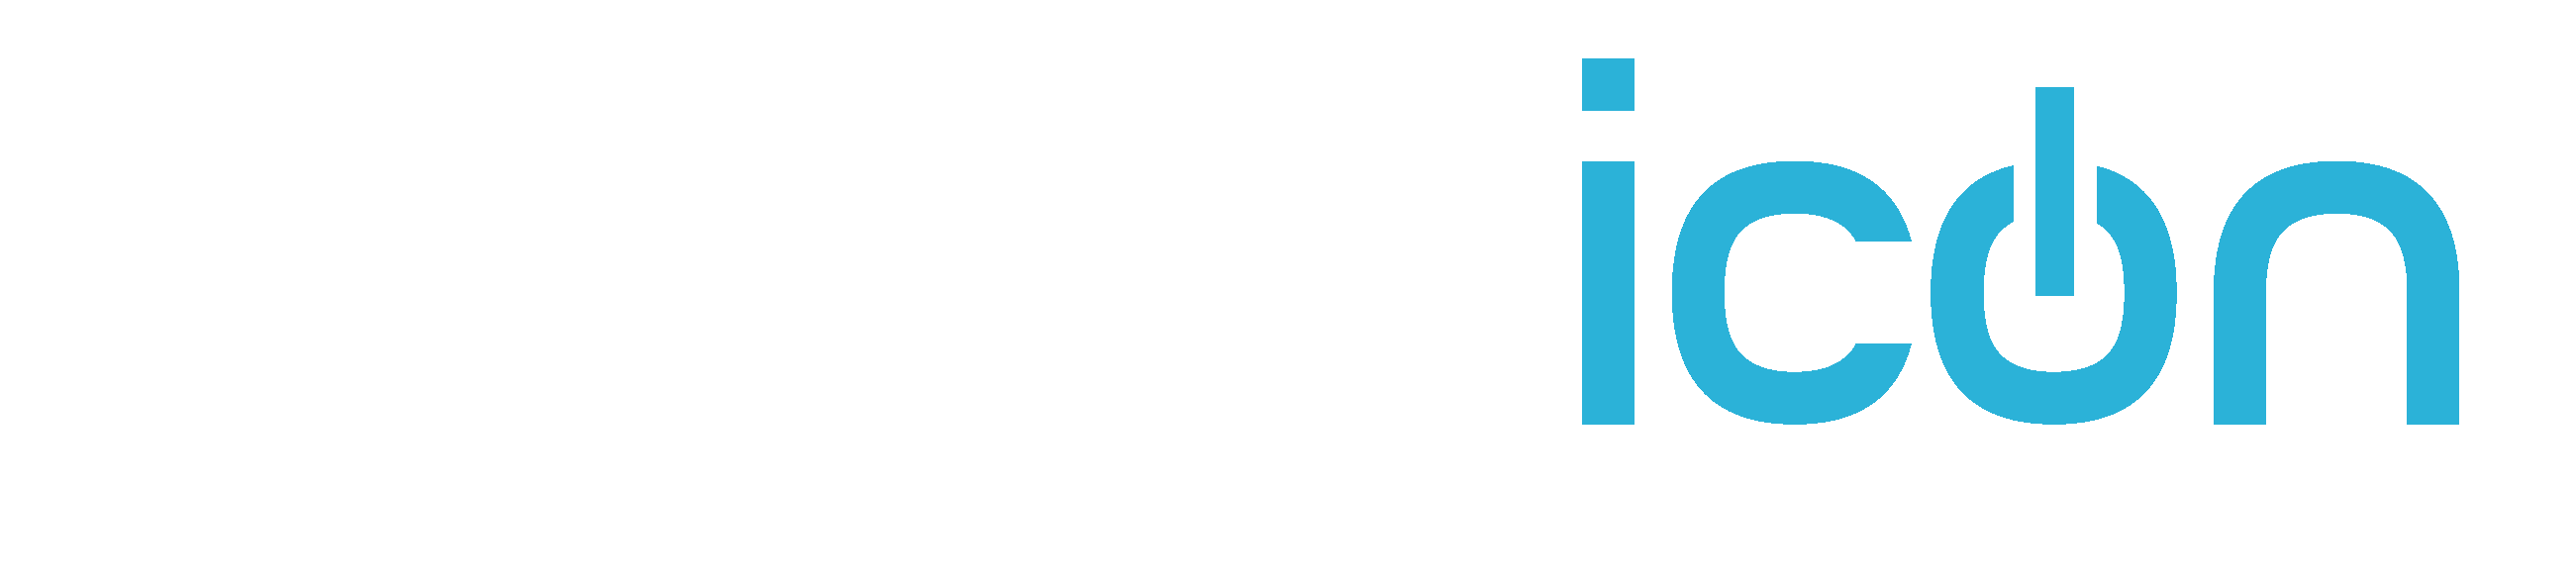 Morphicon Logo